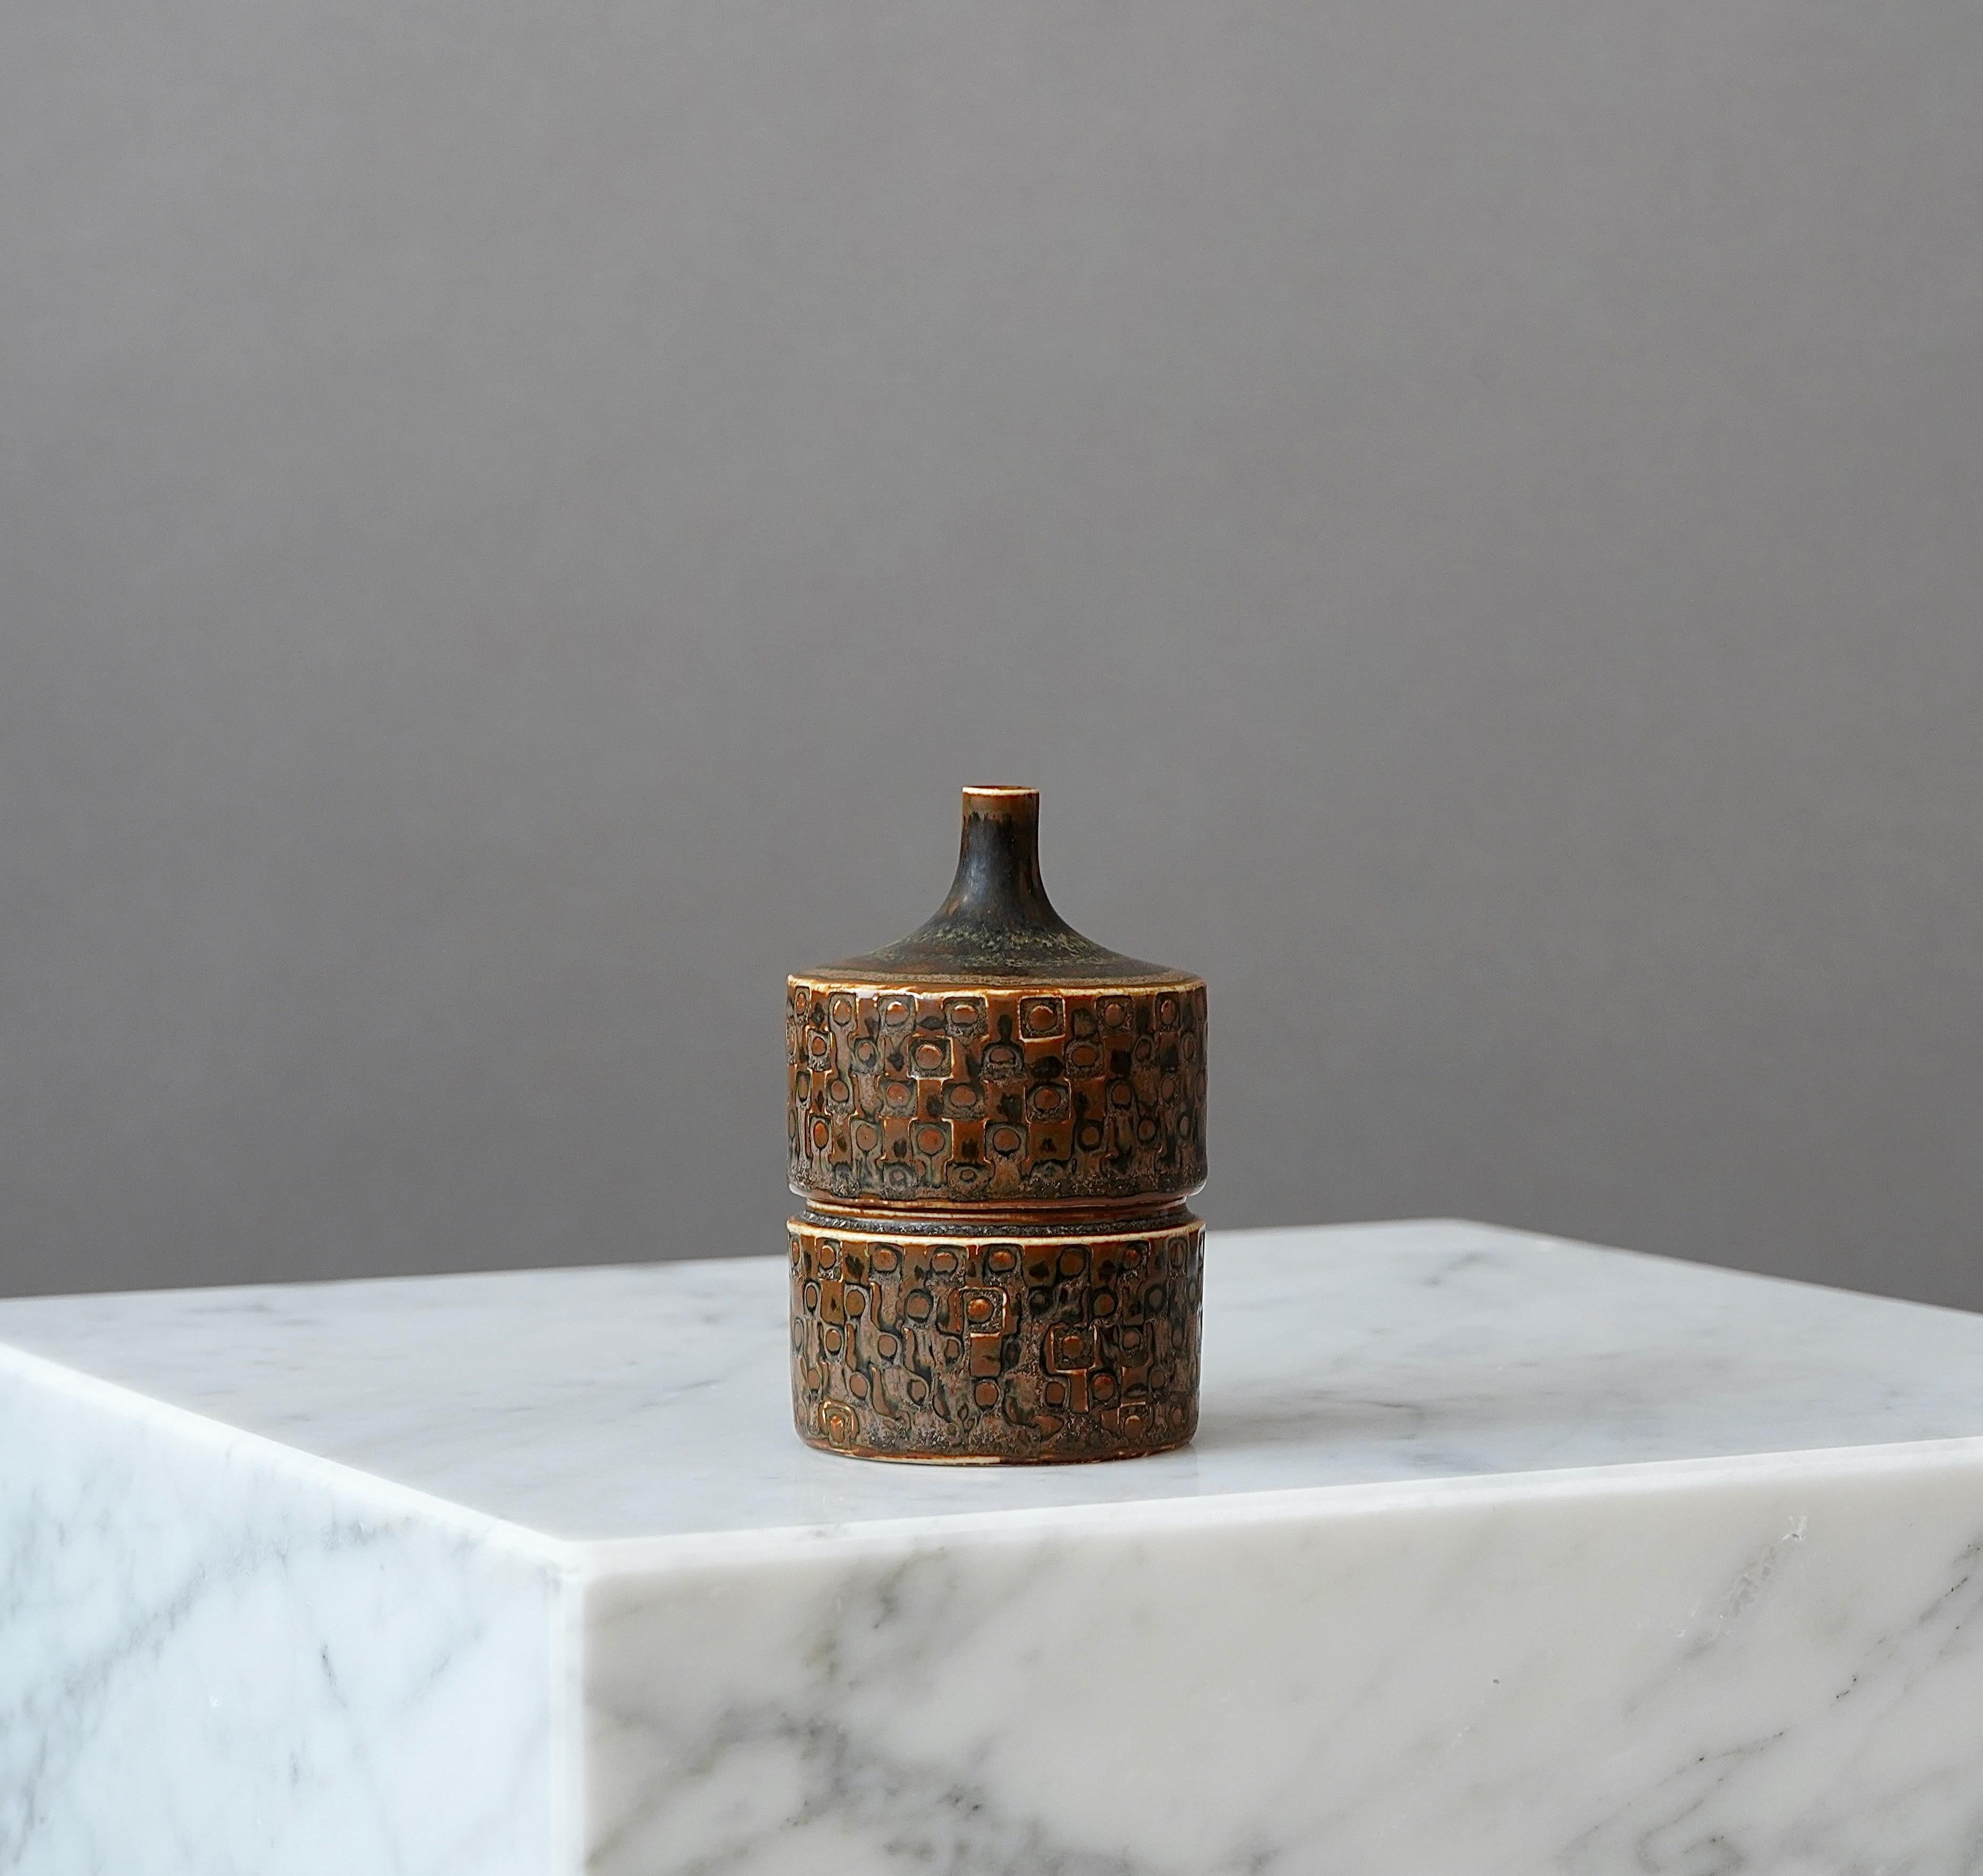 Turned Unique Stoneware Vase by Stig Lindberg for Gustavsberg Studio, Sweden, 1962 For Sale